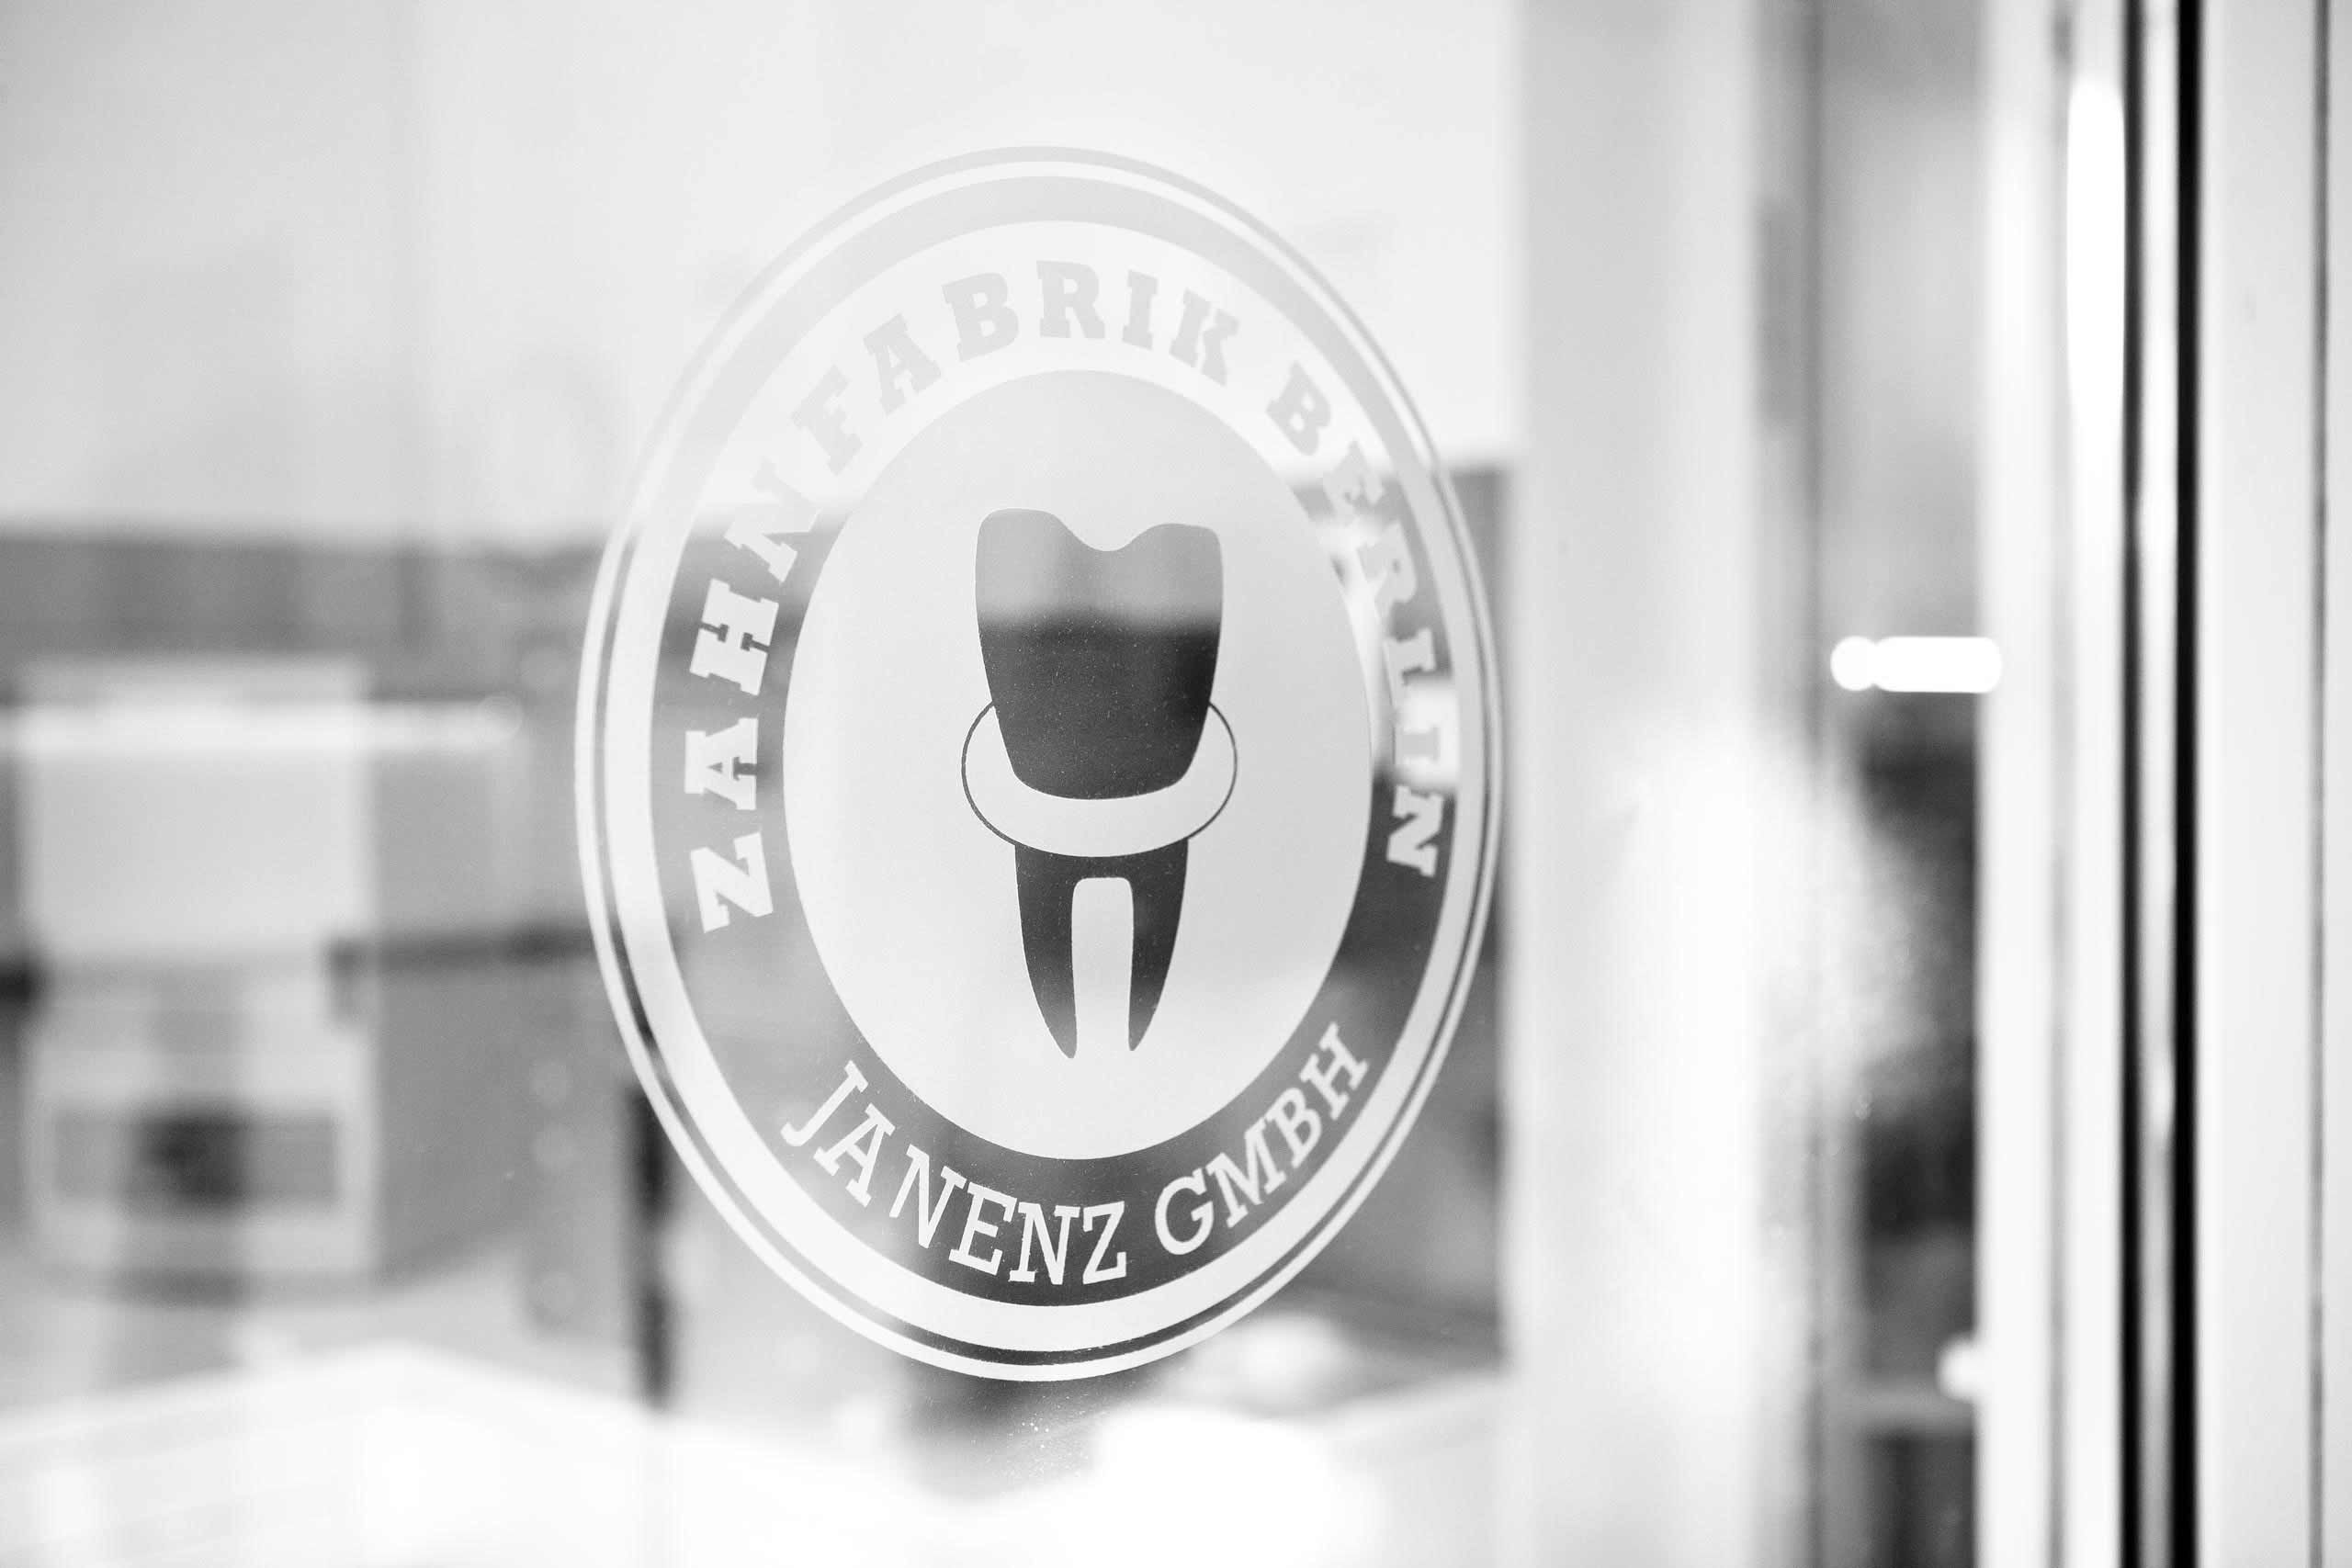 Logo der Zahnfabrik Berlin als Folie auf einer Glastür